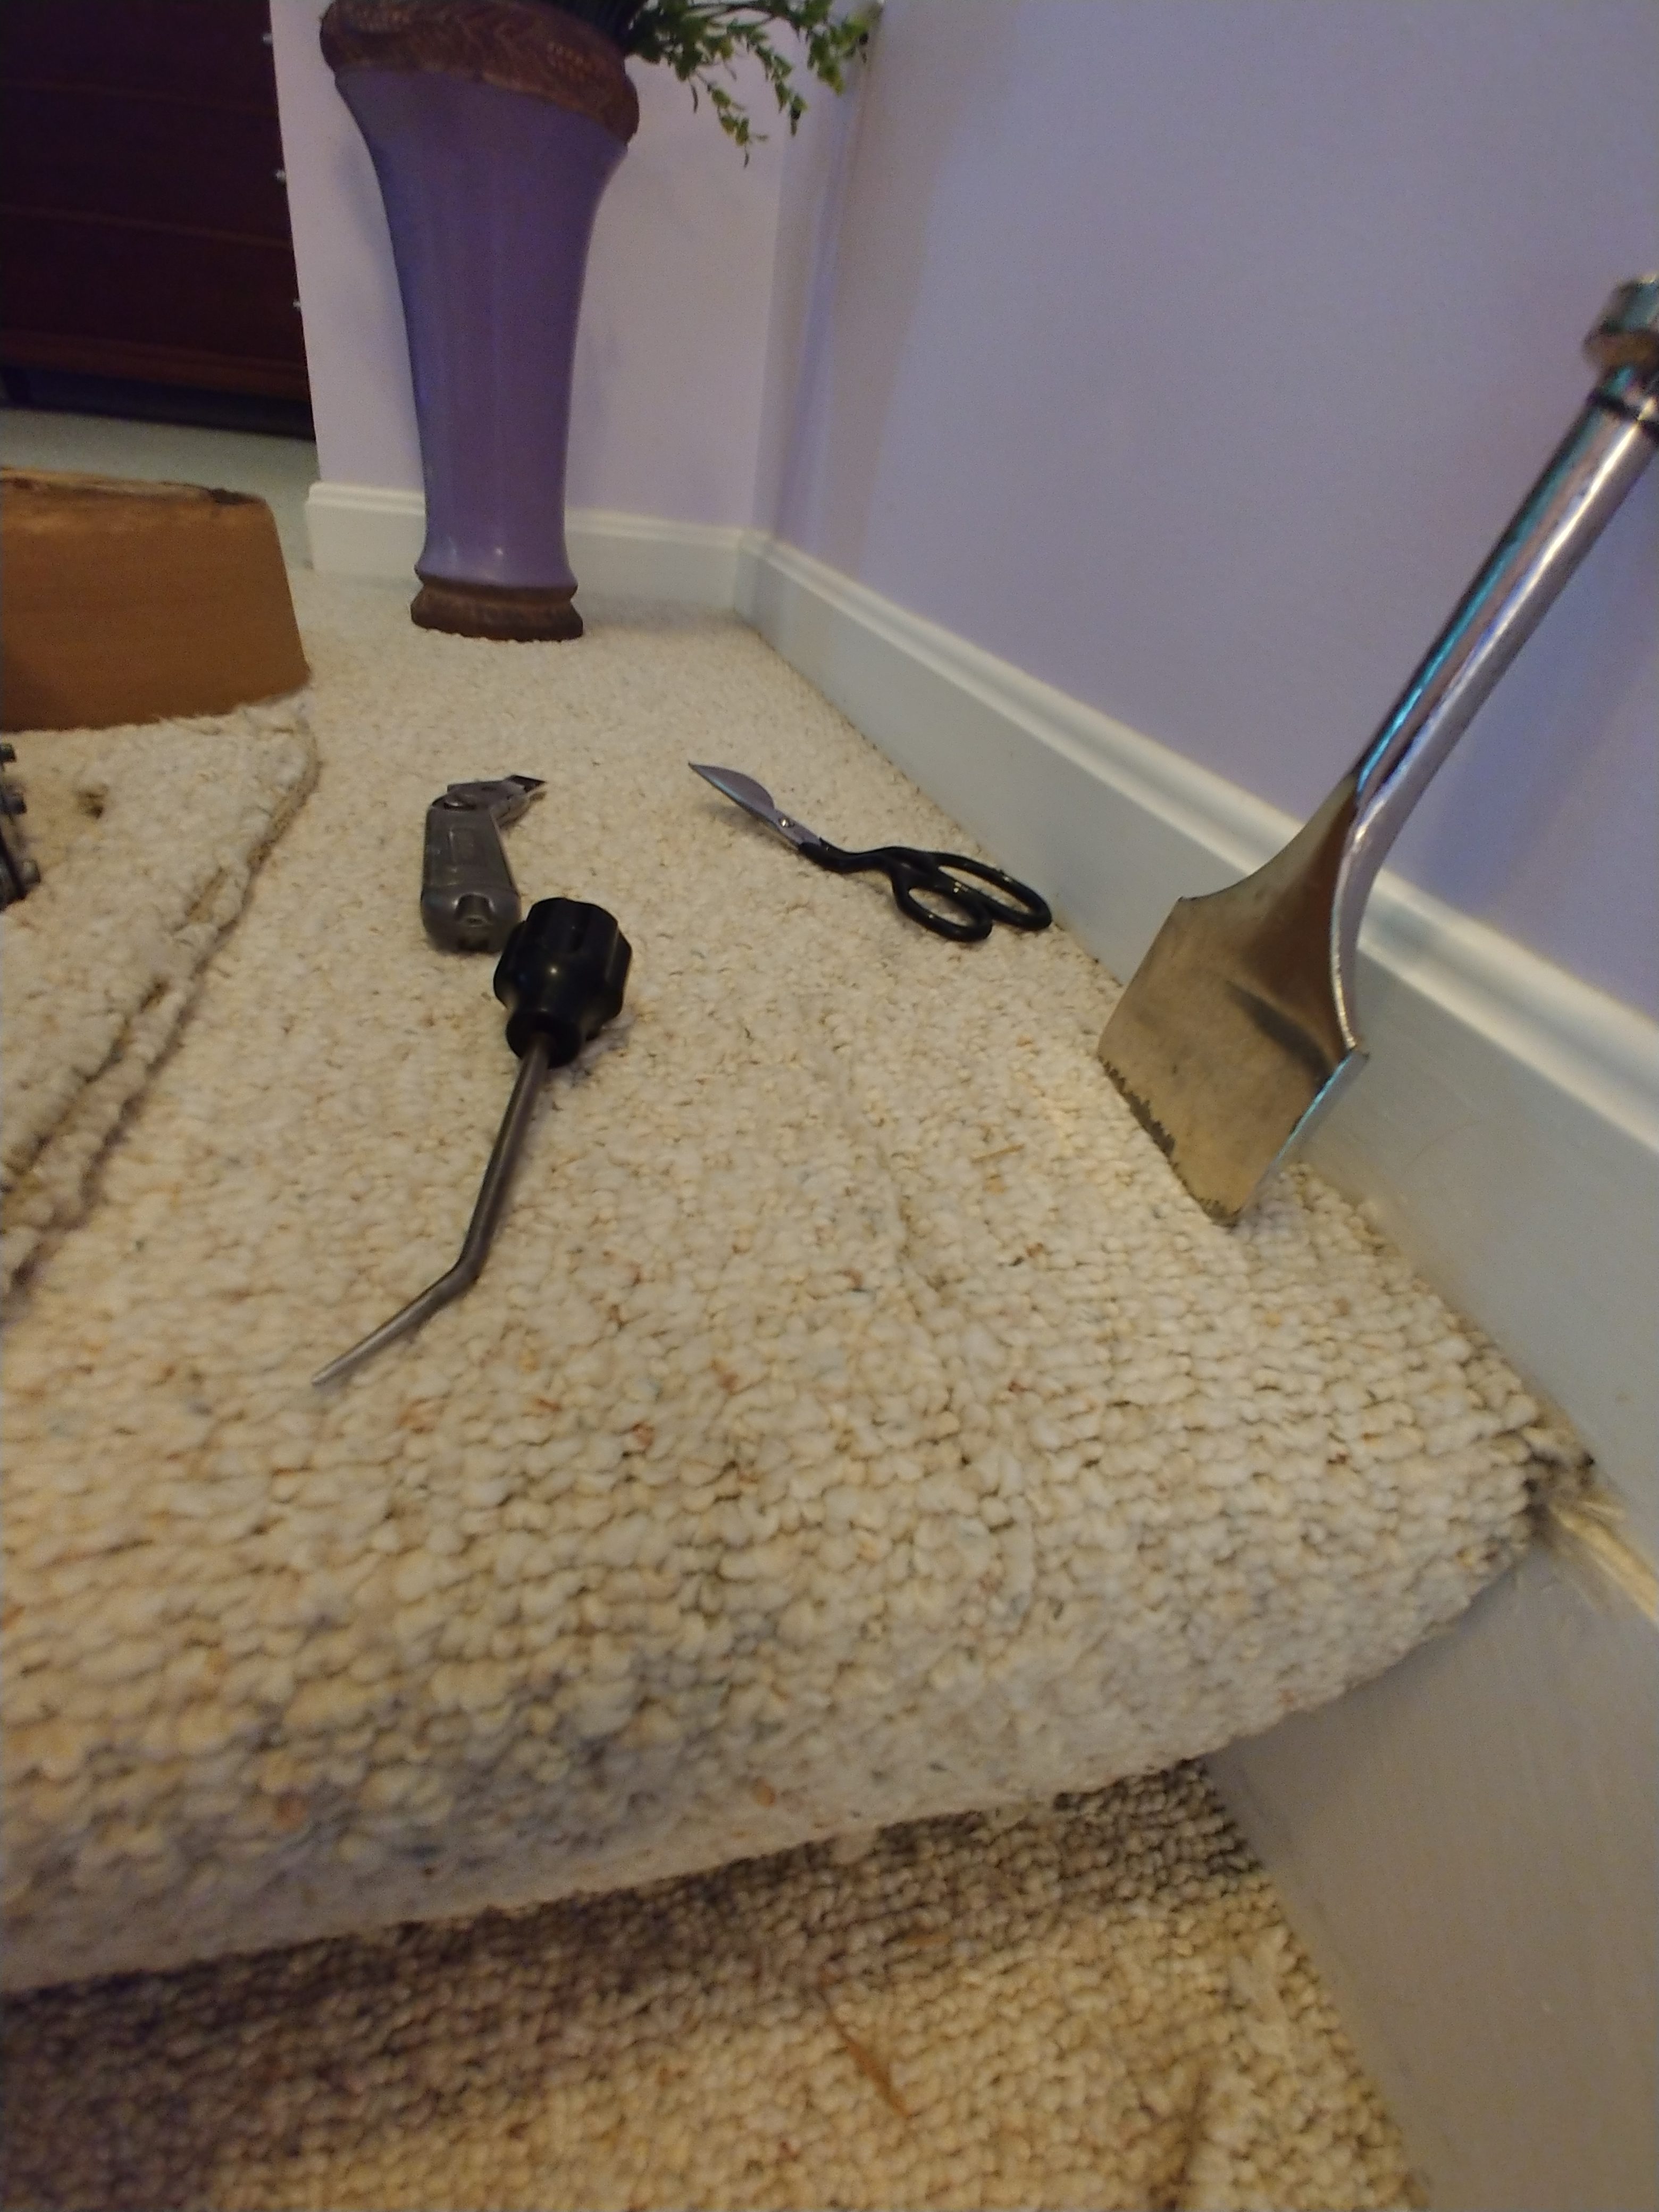 Quick Dry Carpet Repair - Berber